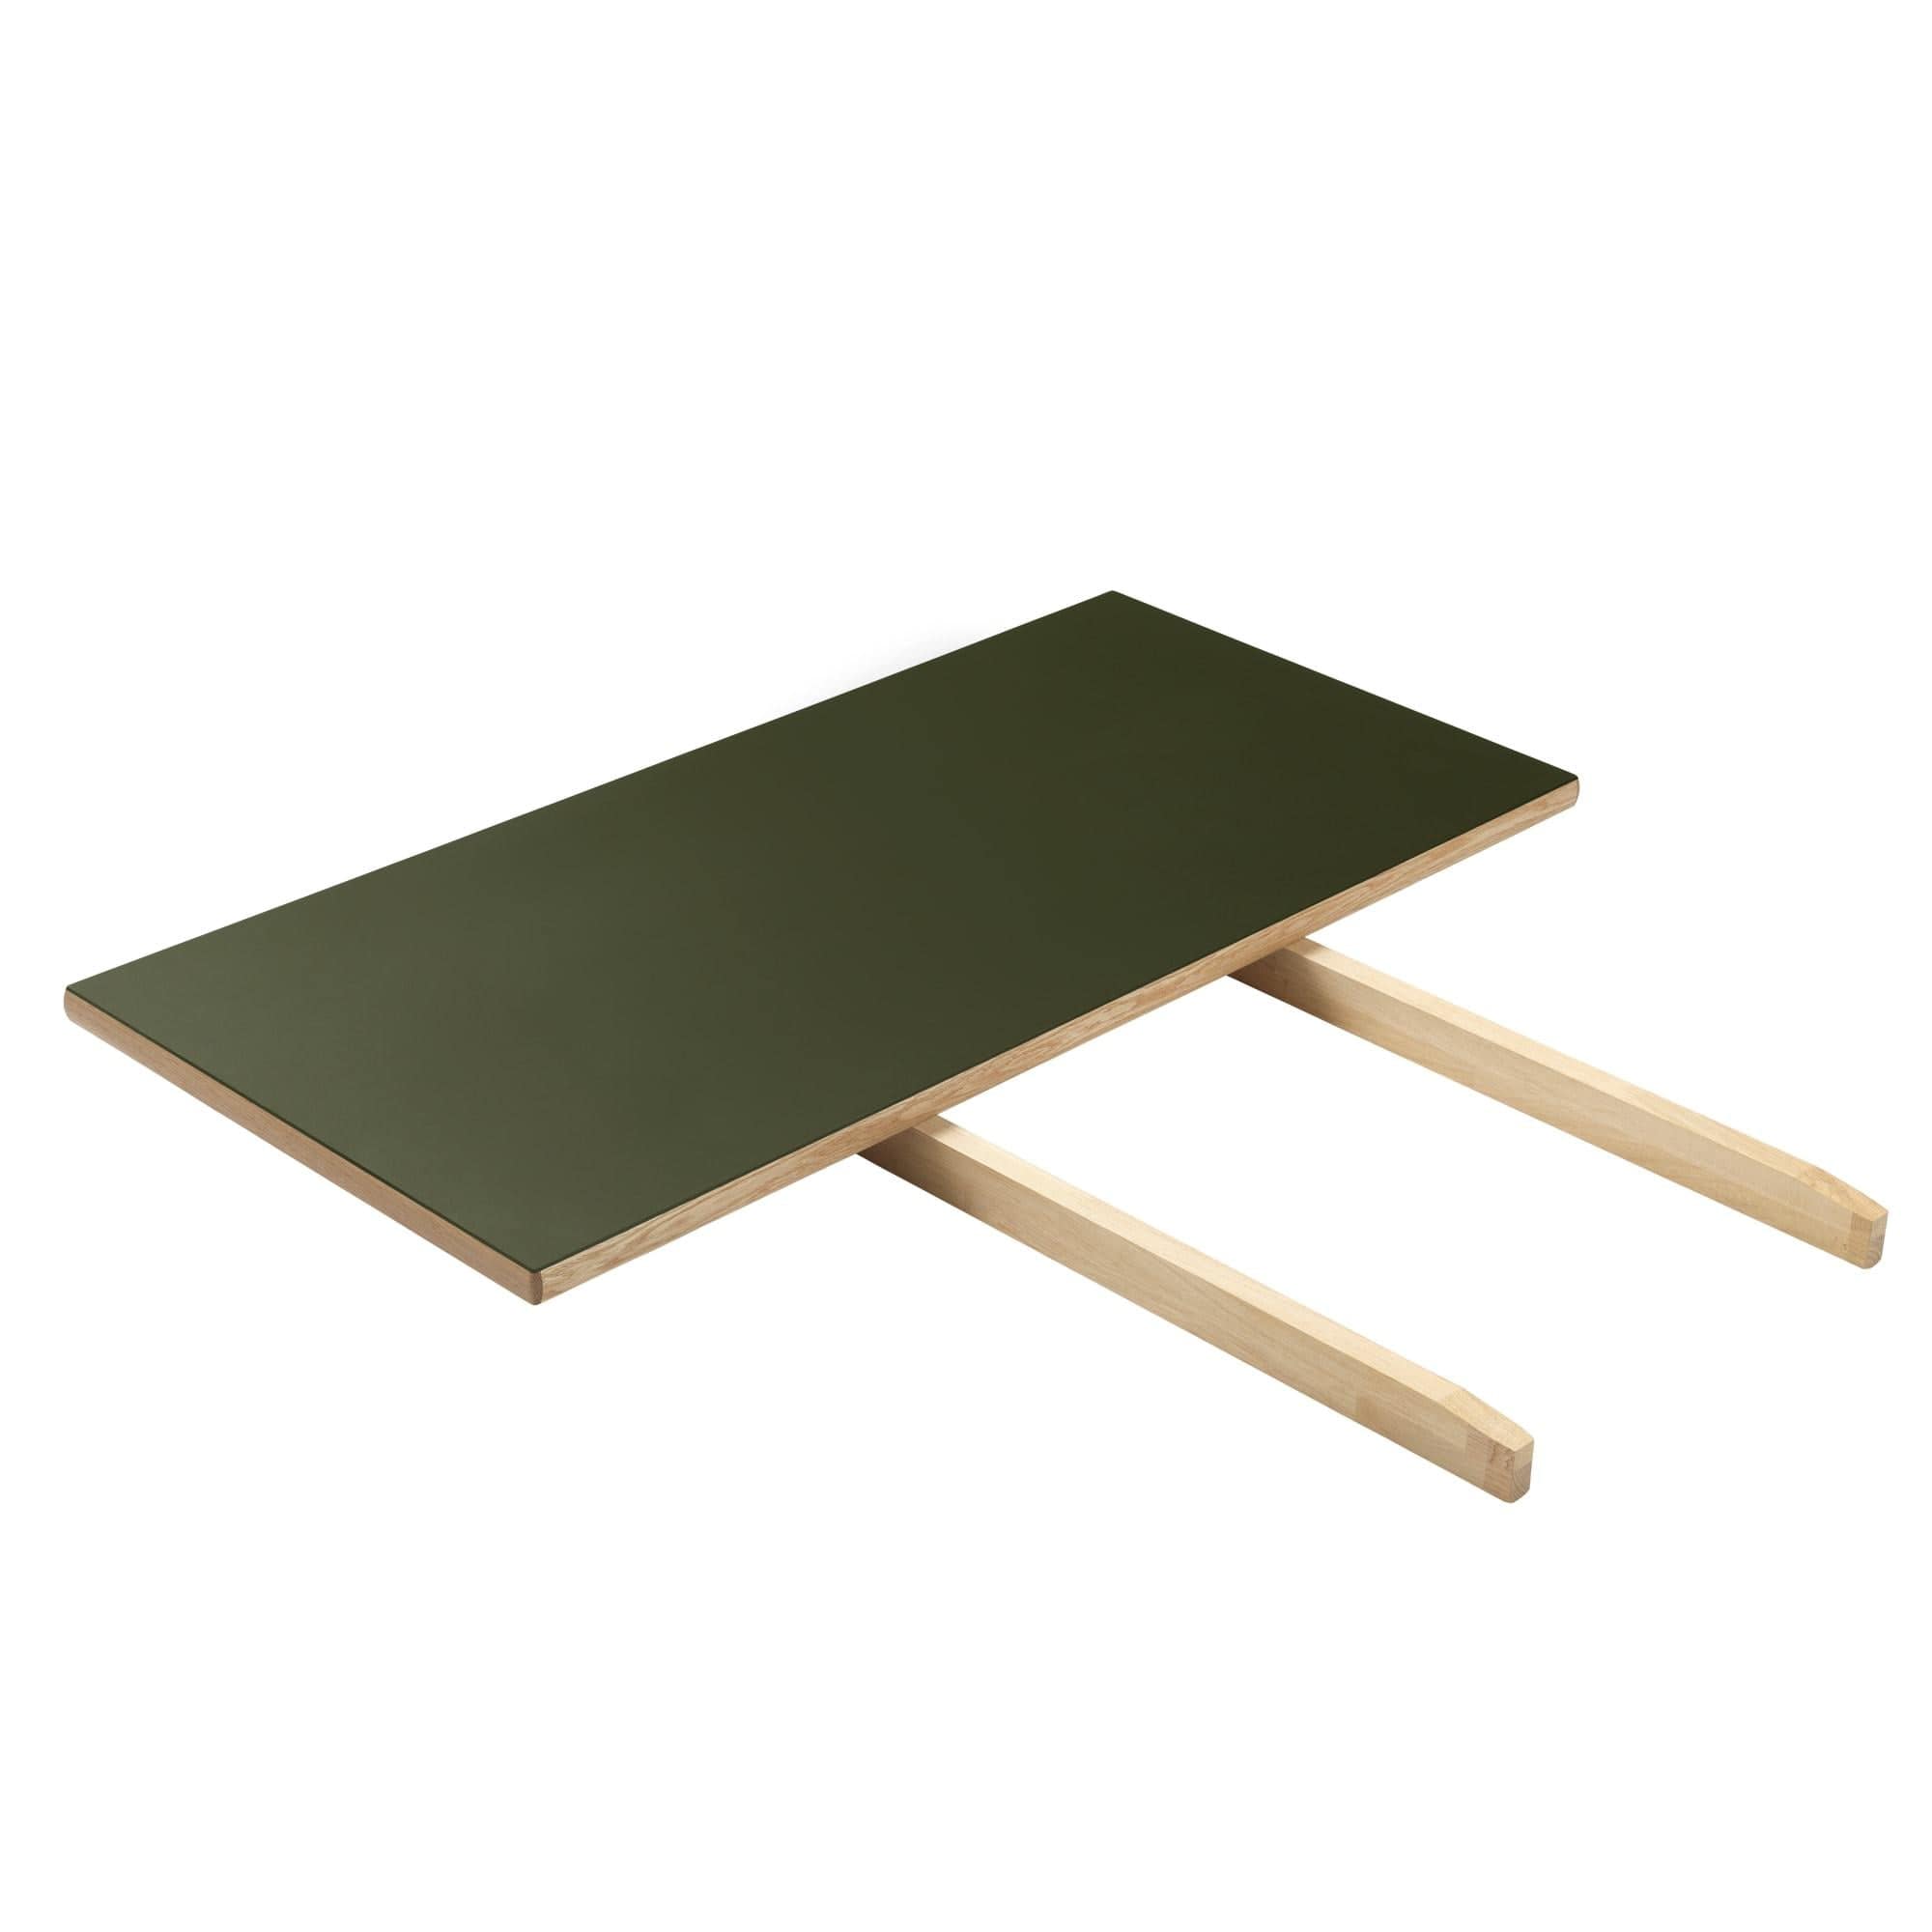 FDB Møbler C35 Ytterligare platta ek/oliv linoleum, 45 cm